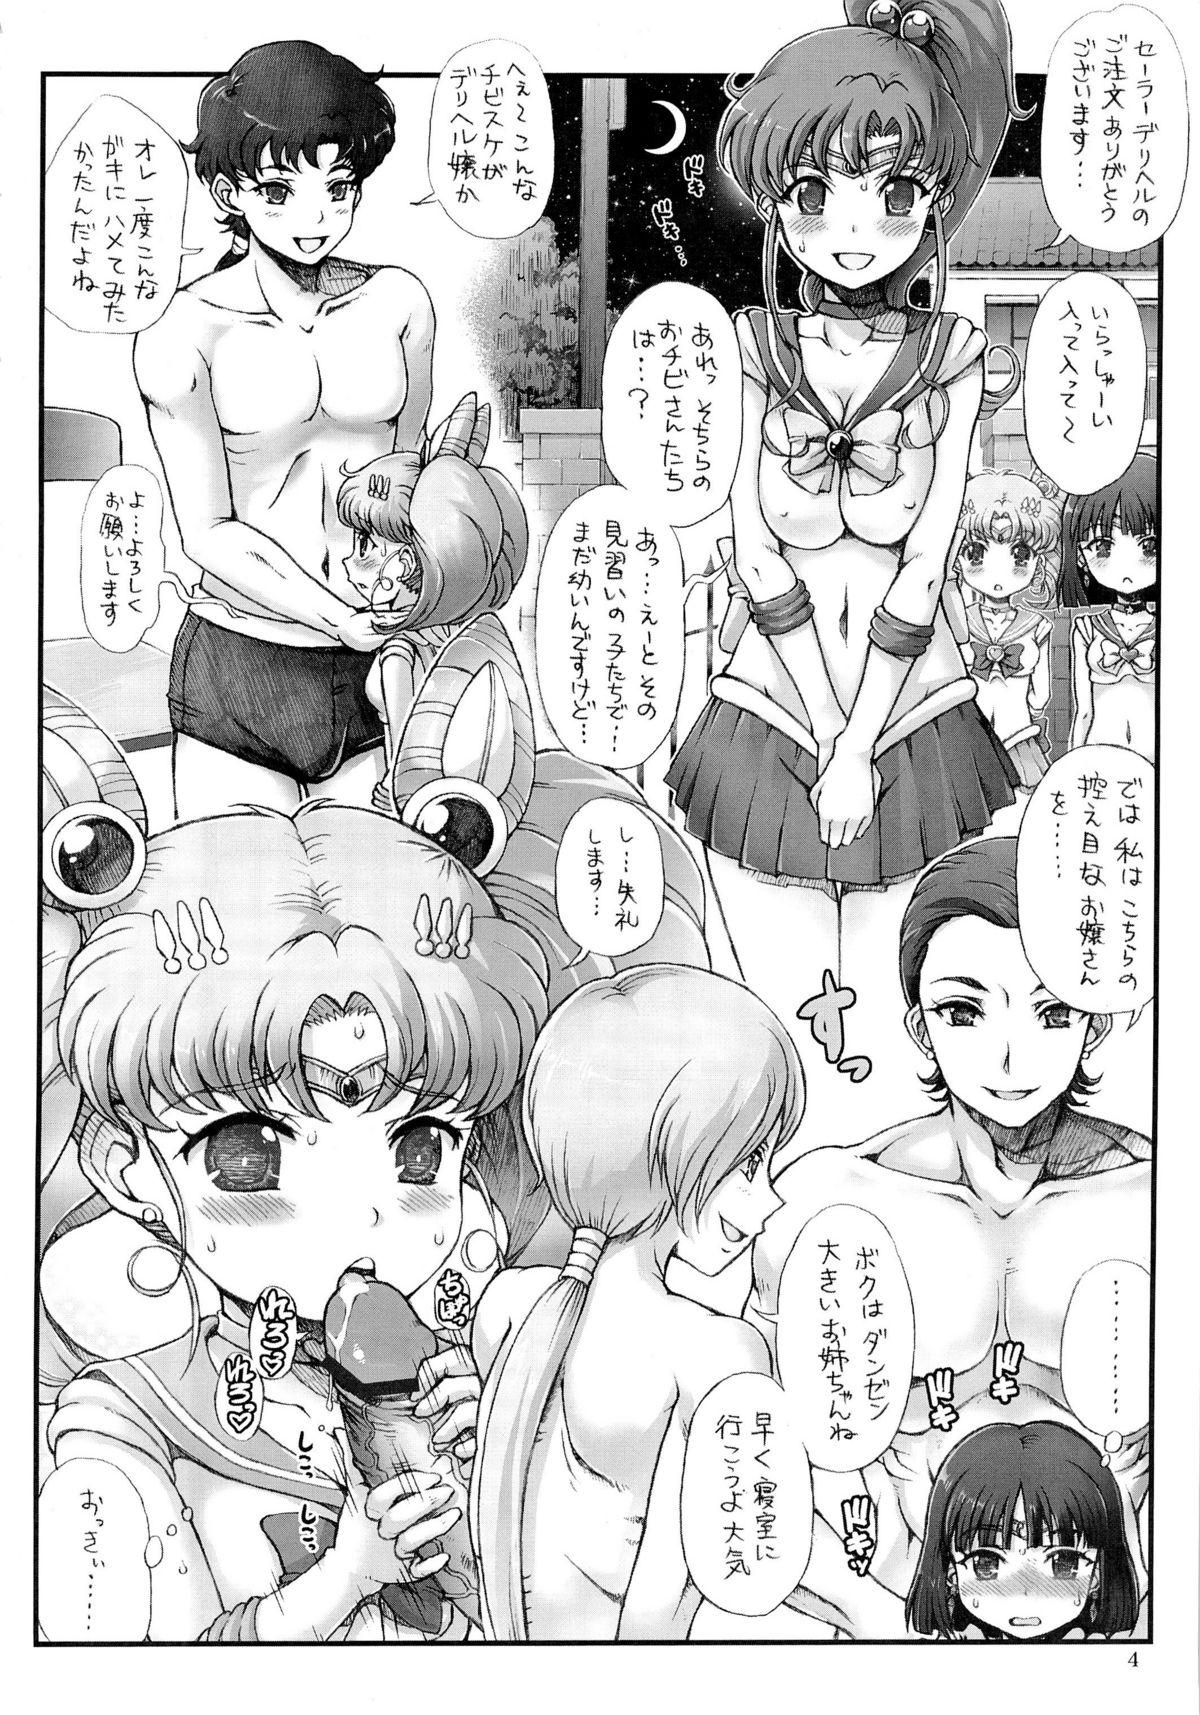 Exhibitionist Sailor Delivery Health - Sailor moon Public Nudity - Page 4